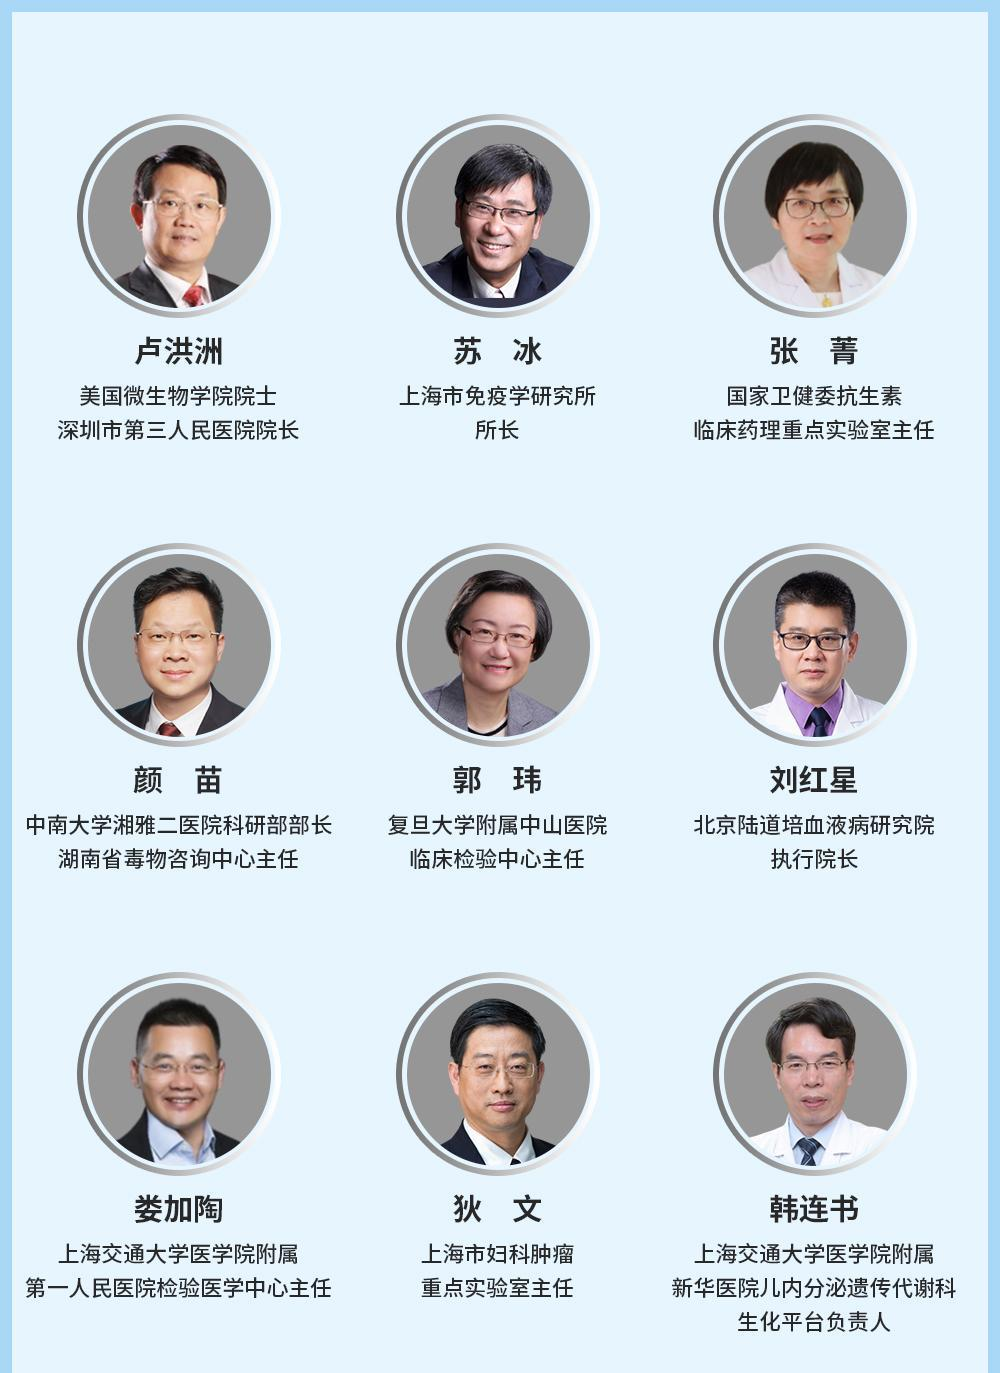 第八届全球精准医疗（中国）峰会暨第四届肿瘤免疫治疗领袖峰会-上海站